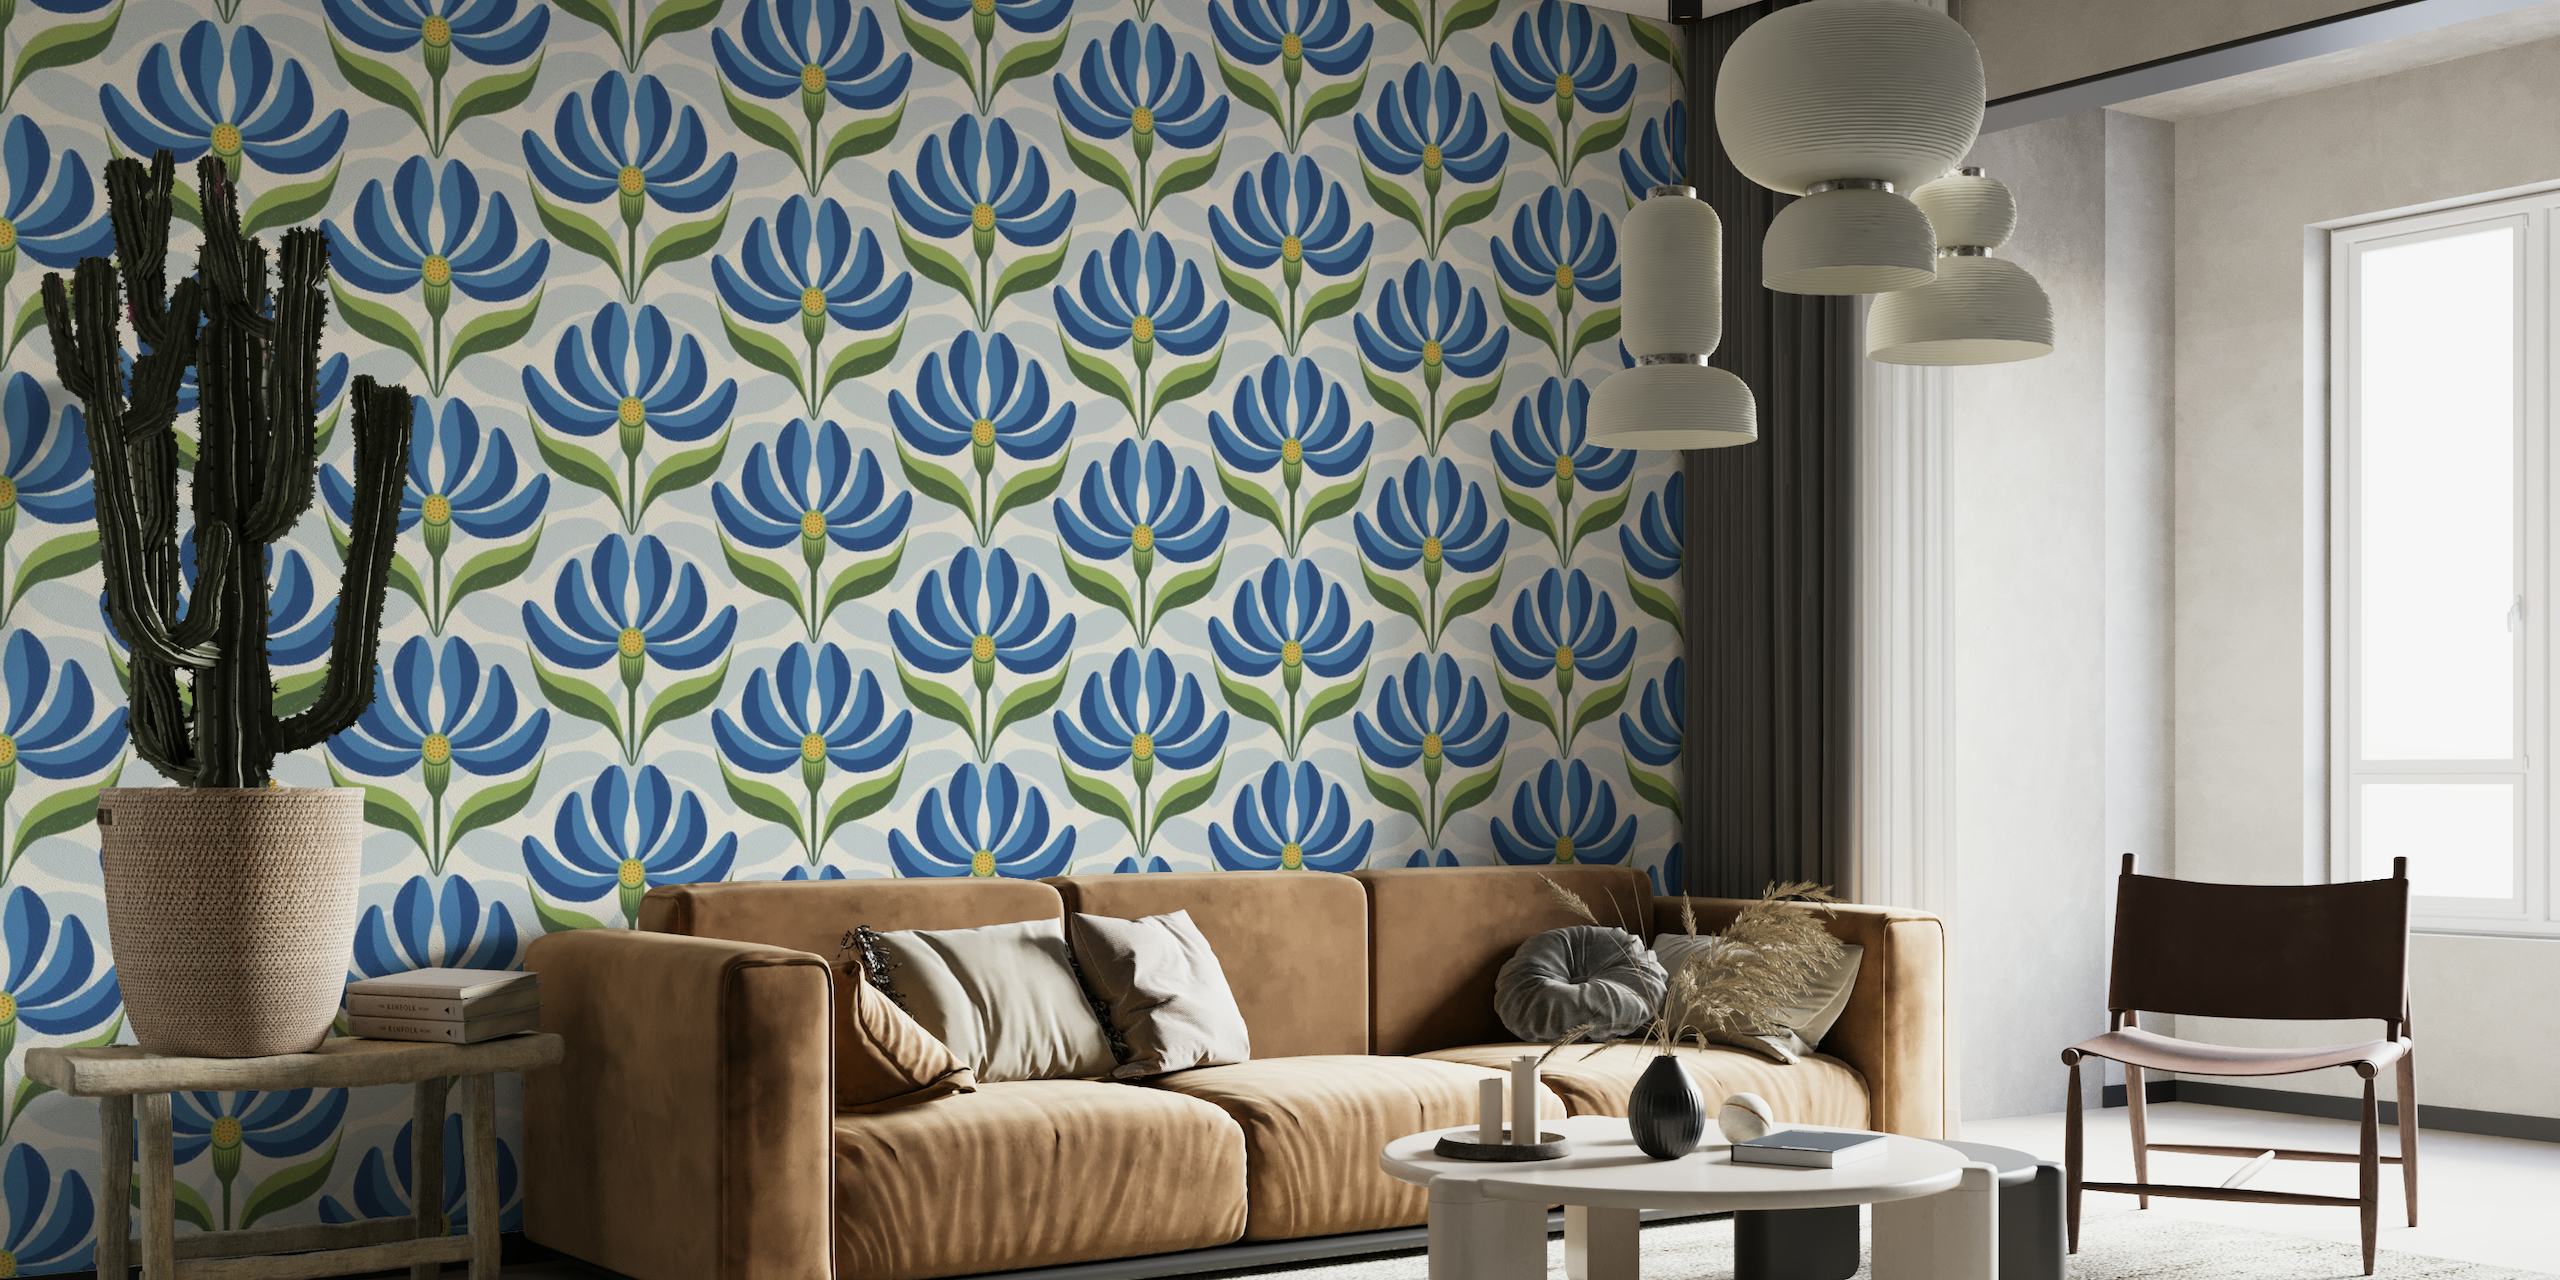 Vintageinspirerat geometriskt blommönster i kungsblått, grönt och elfenben för väggmålning